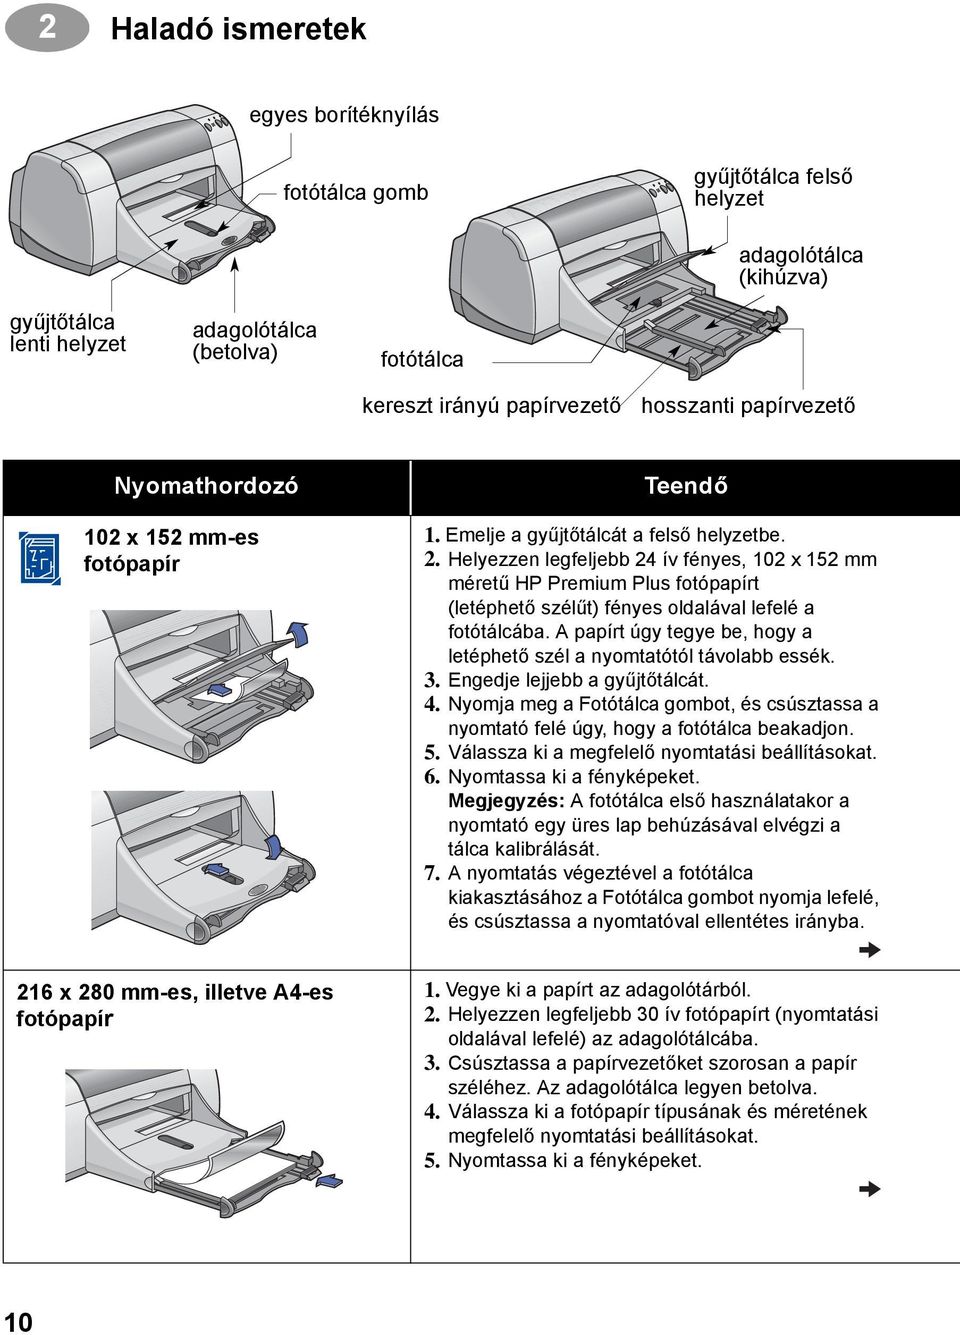 HP DeskJet nyomtató Felhasználói kézikönyv (Windows) 950C Series. Magyar -  PDF Ingyenes letöltés